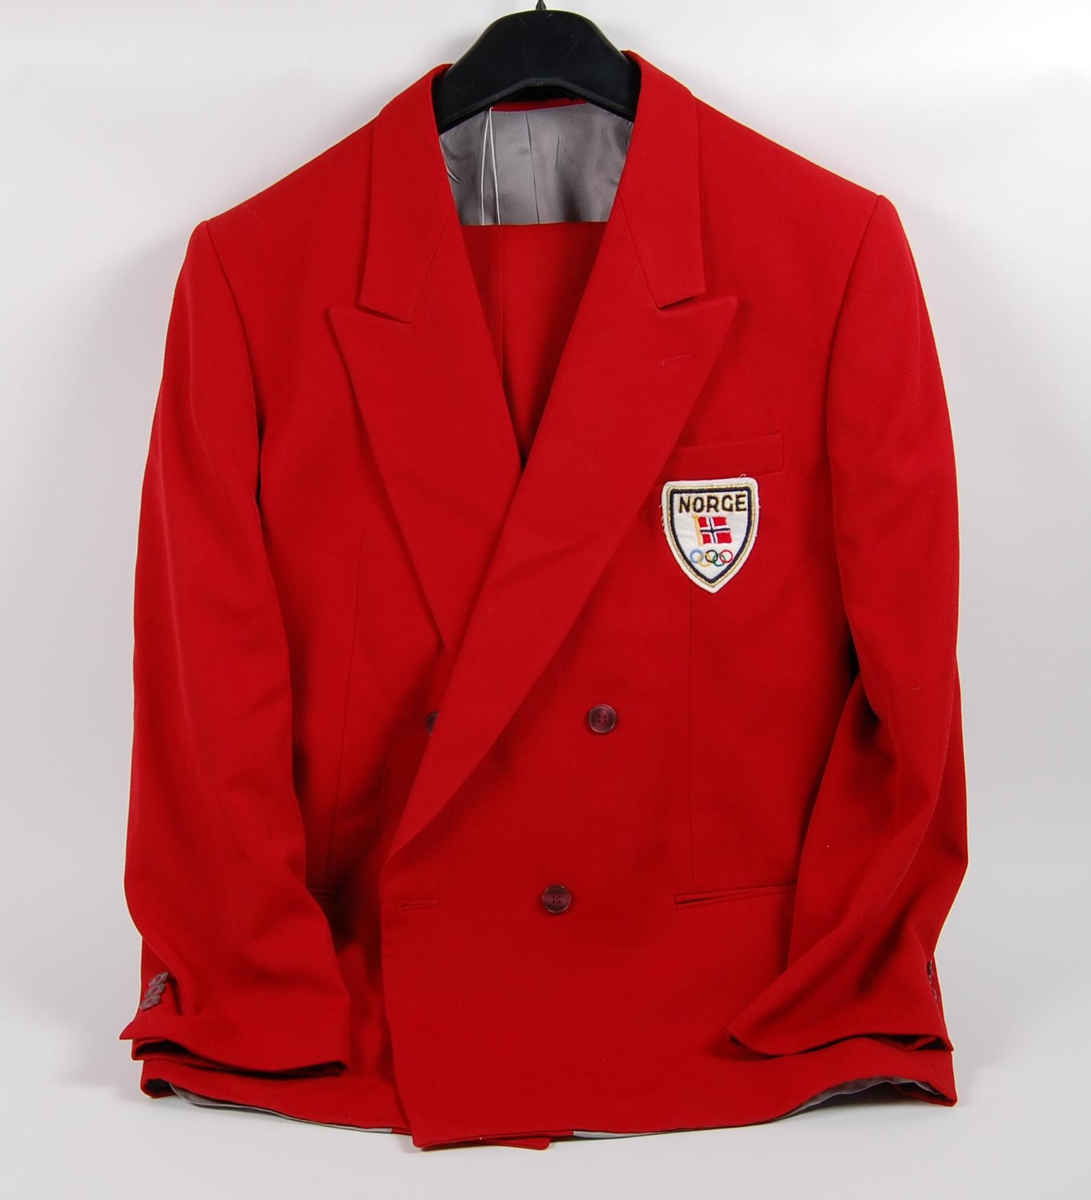 Rød dress bestående av jakke og bukse. På jakka er det påsydd et merke med de olympiske ringene, norske flagget og innskriften: NORGE. 